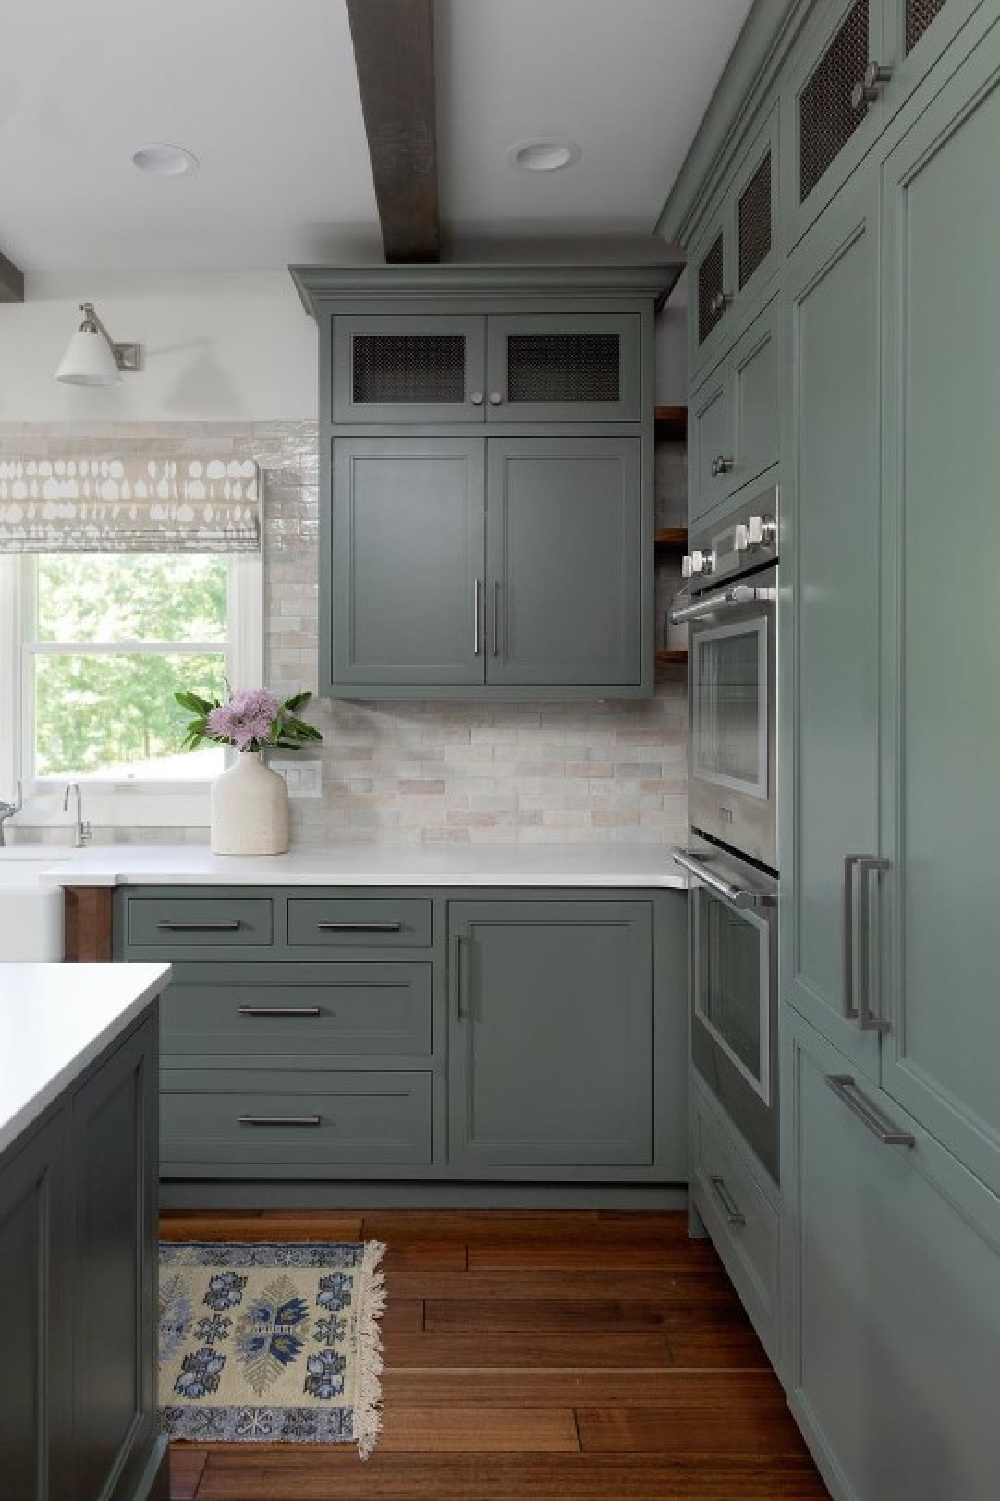 Sherwin Williams Rosemary painted cabinets in kitchen - @kristiekoningdesign. #sherwinwilliamsrosemary #greenkitchen